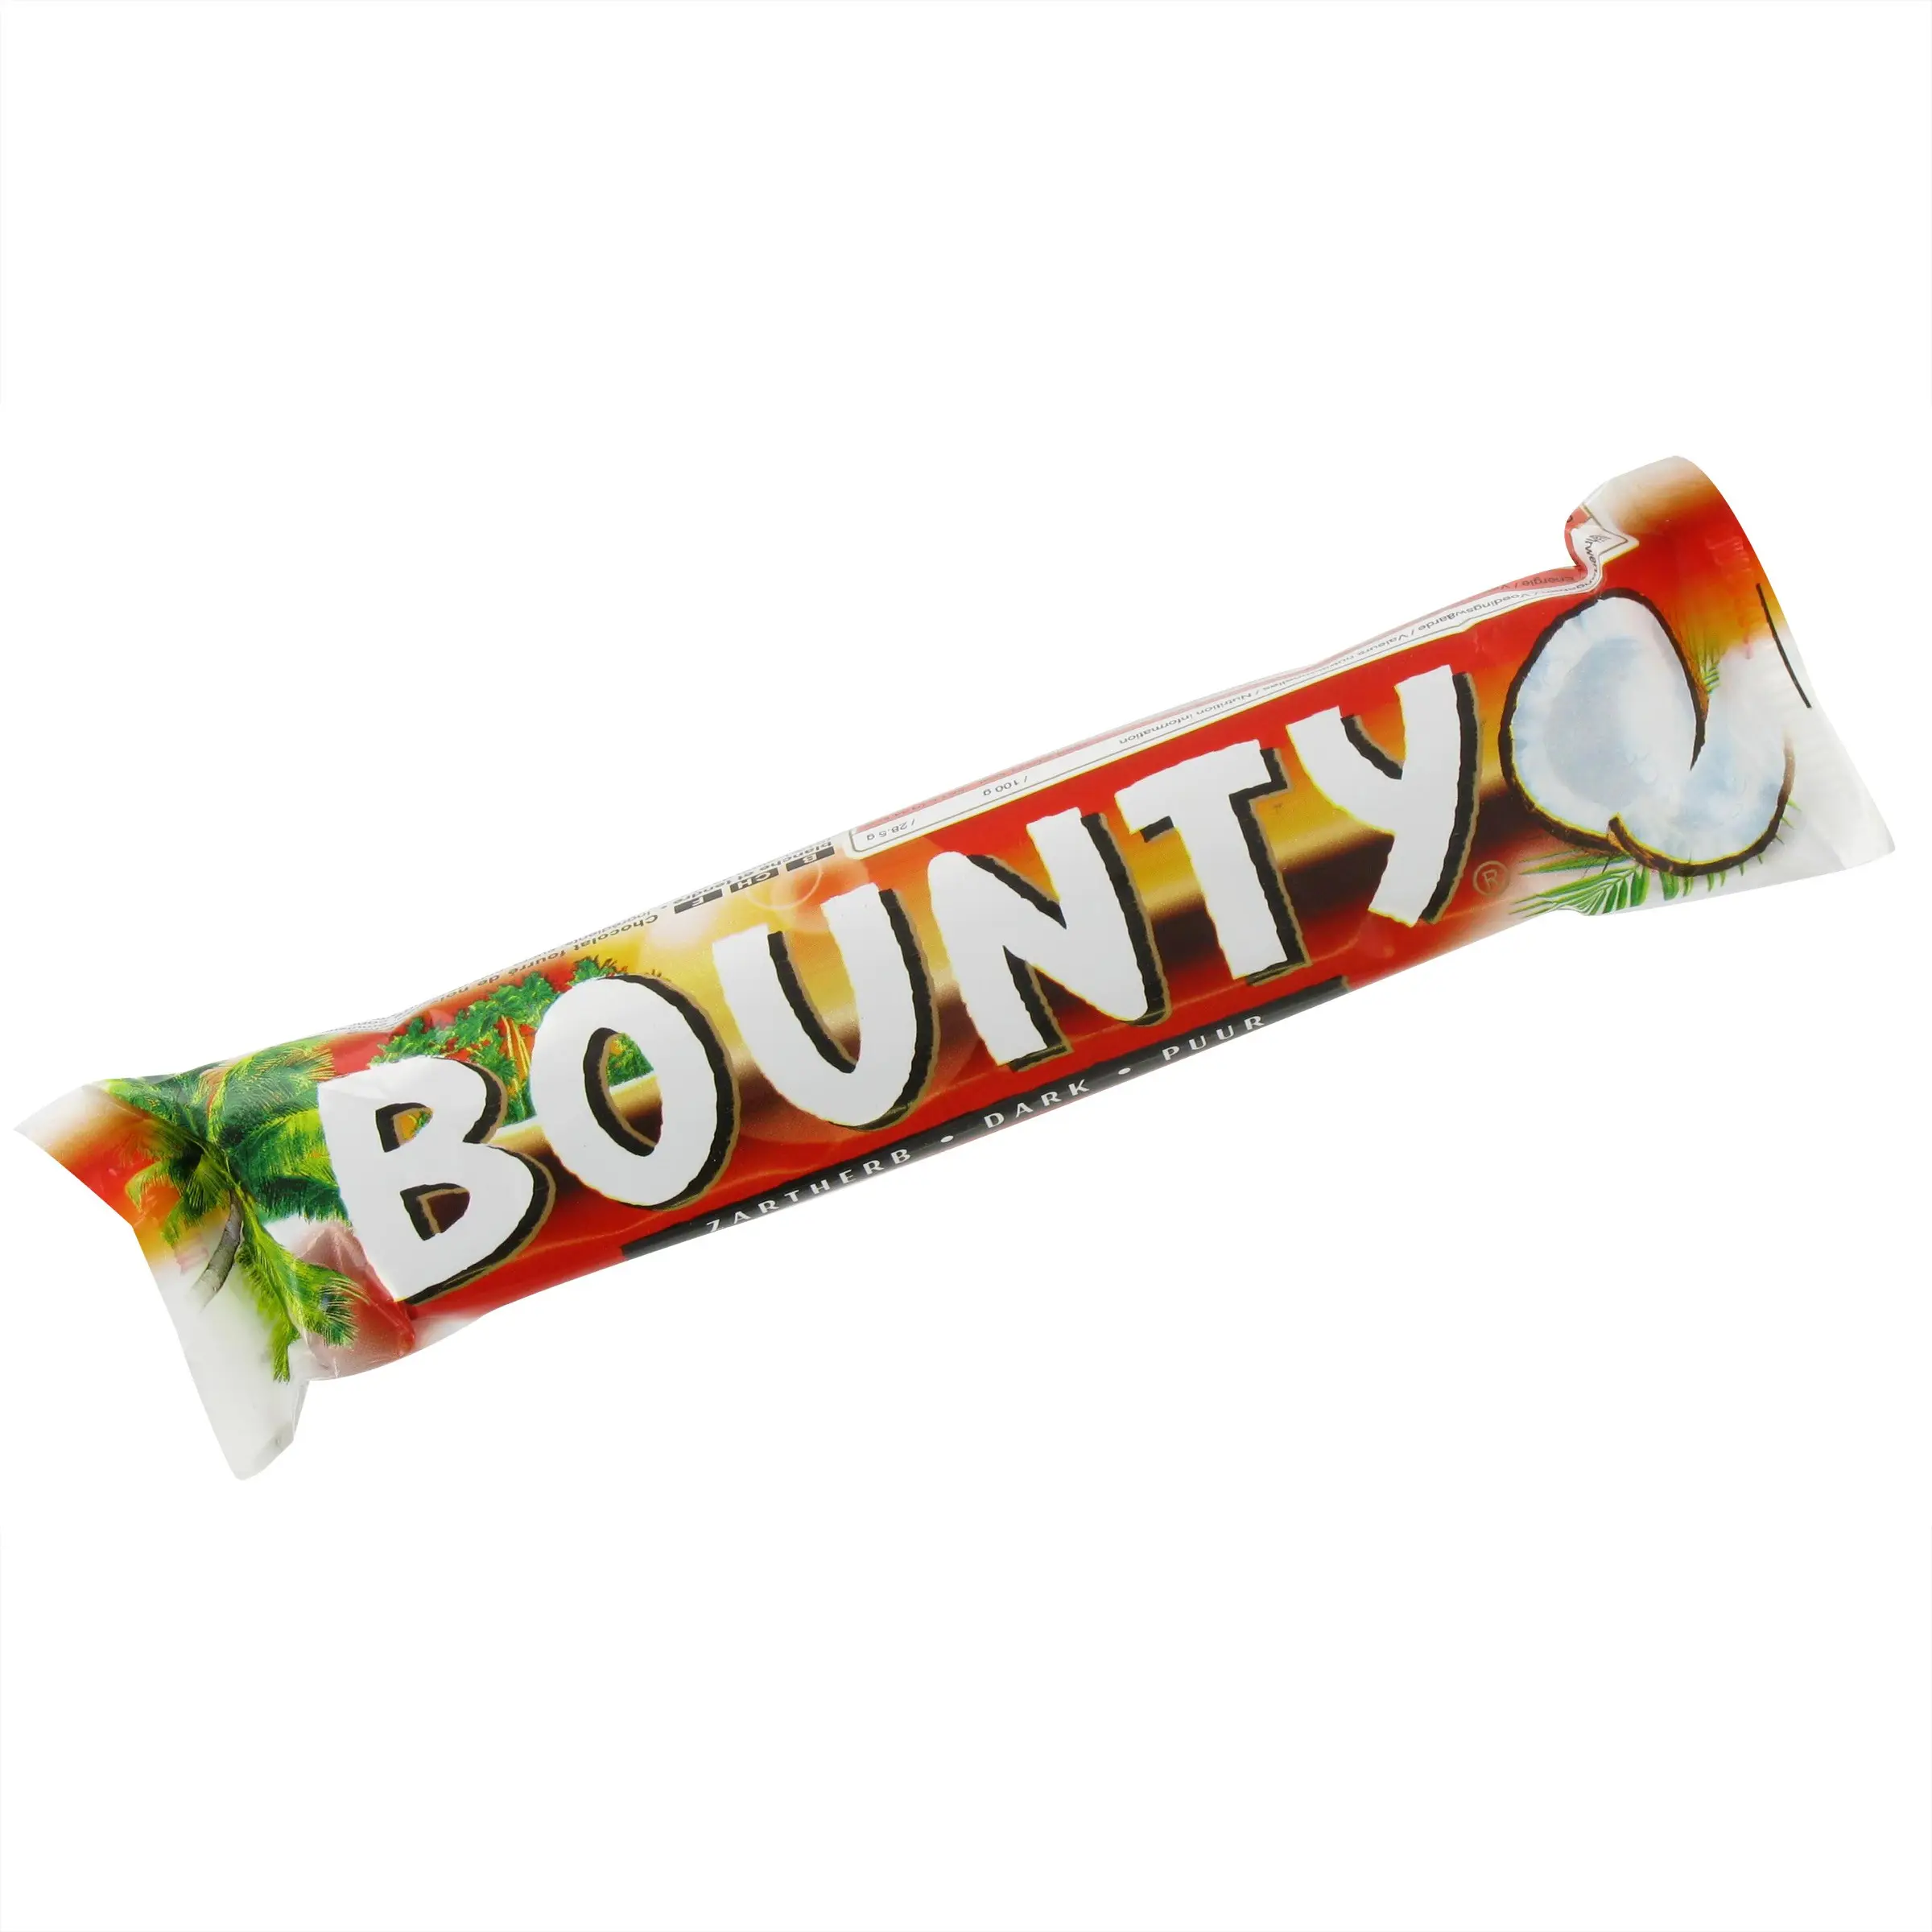 Kẹo Bounty cao cấp-Giá tốt nhất cho các nhà bán lẻ